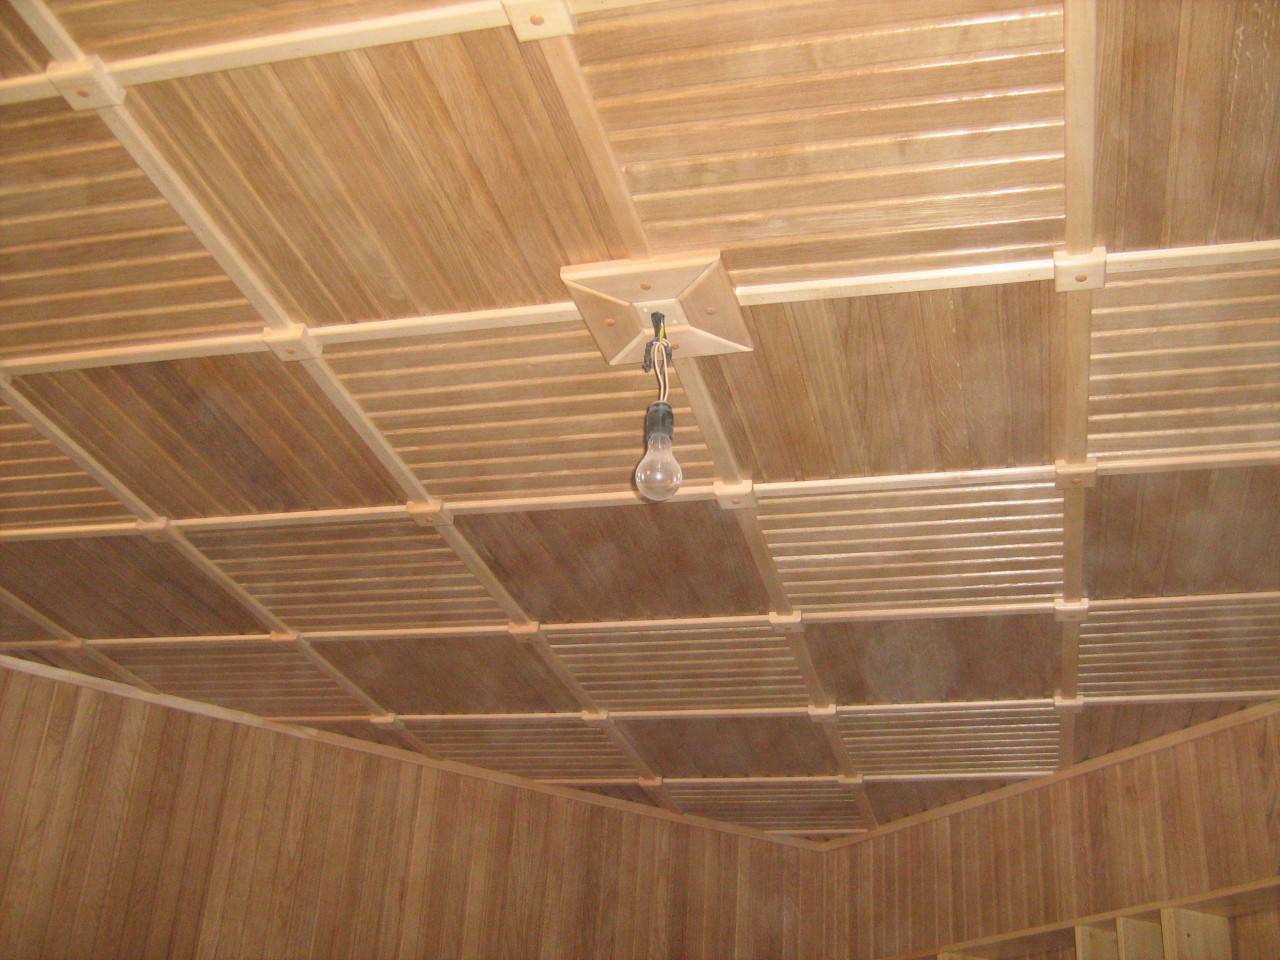 Лучшие способы, как сделать потолок в комнате самостоятельно, красиво и недорого. фото идей